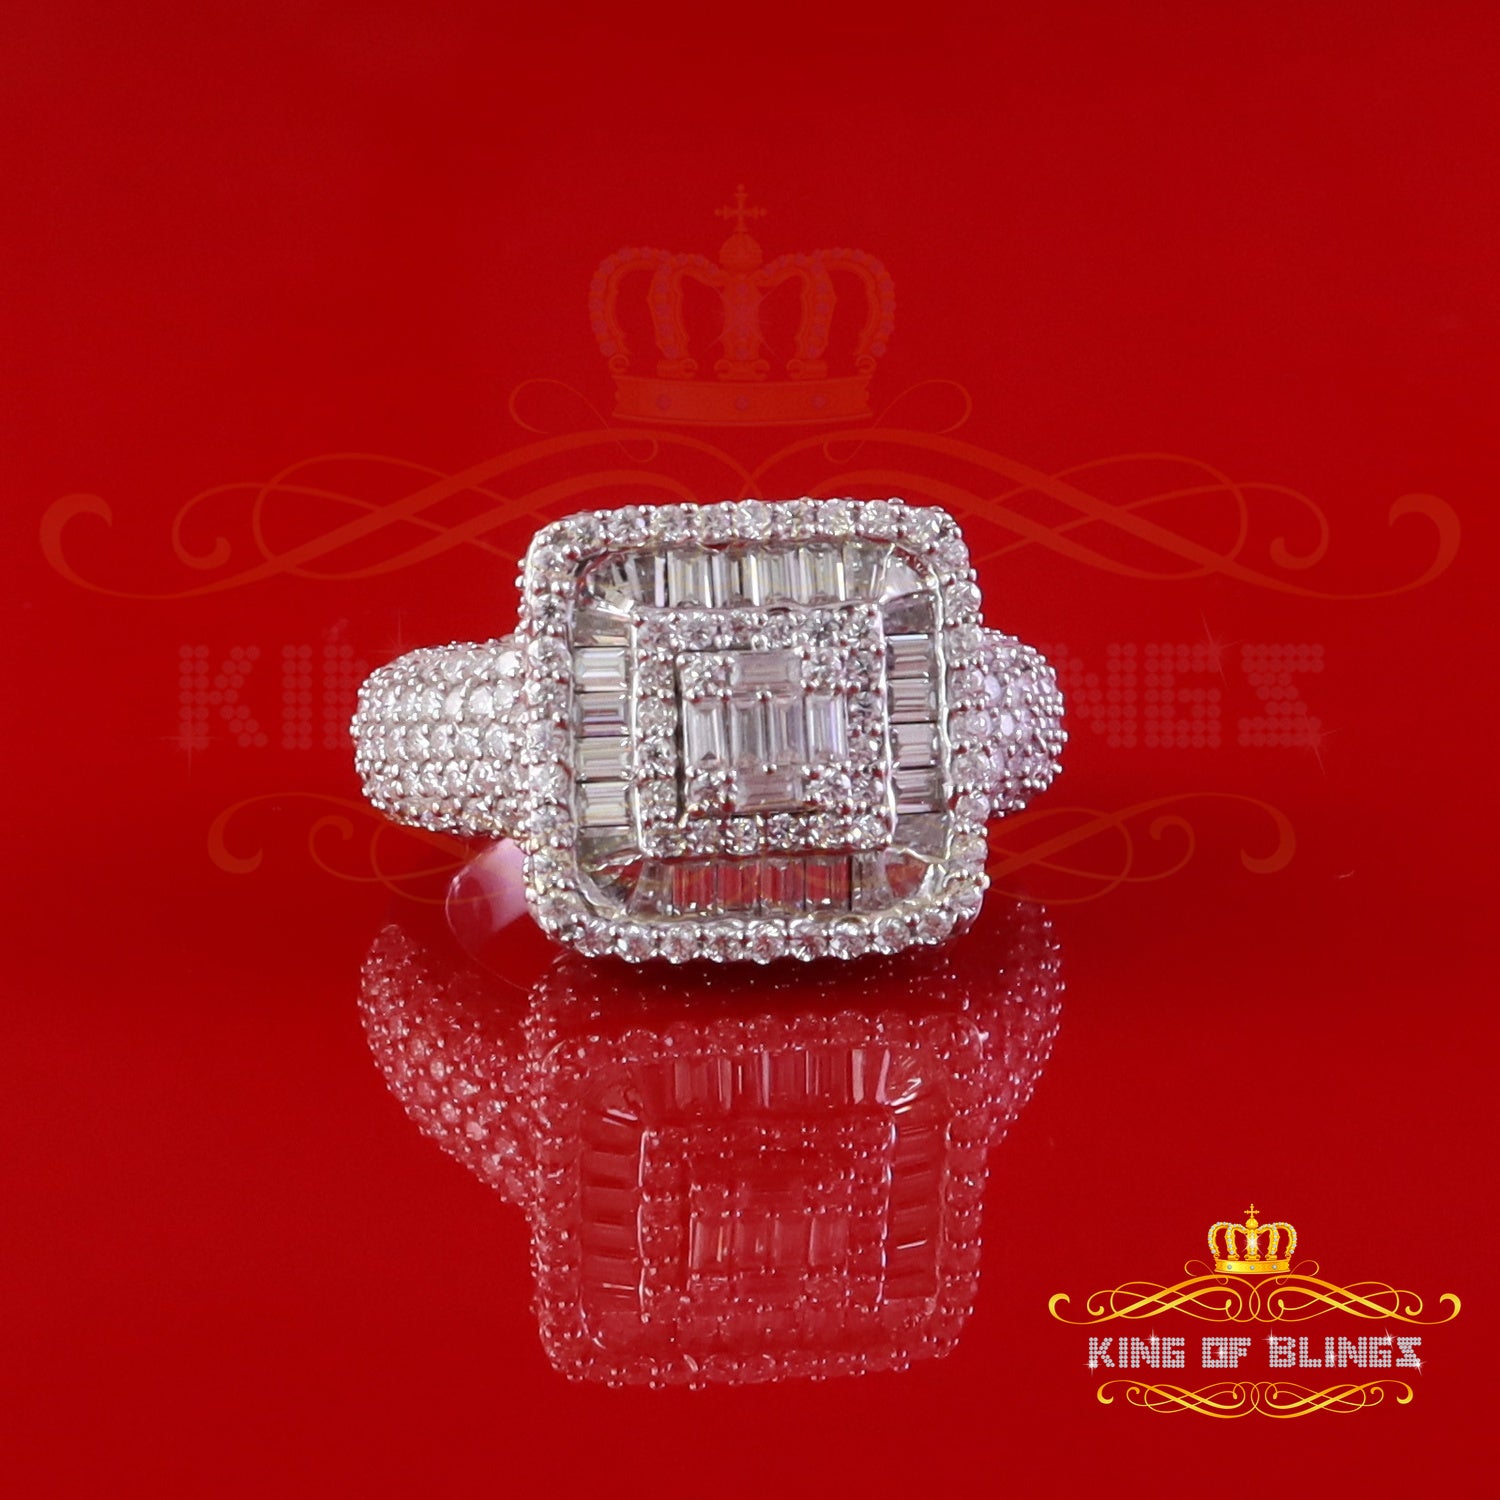 King of Bling's Men's/Womens 925 White Silver 4.50ct VVS 'D' Moissanite Square Pinky Rings SZ 10 King of Blings